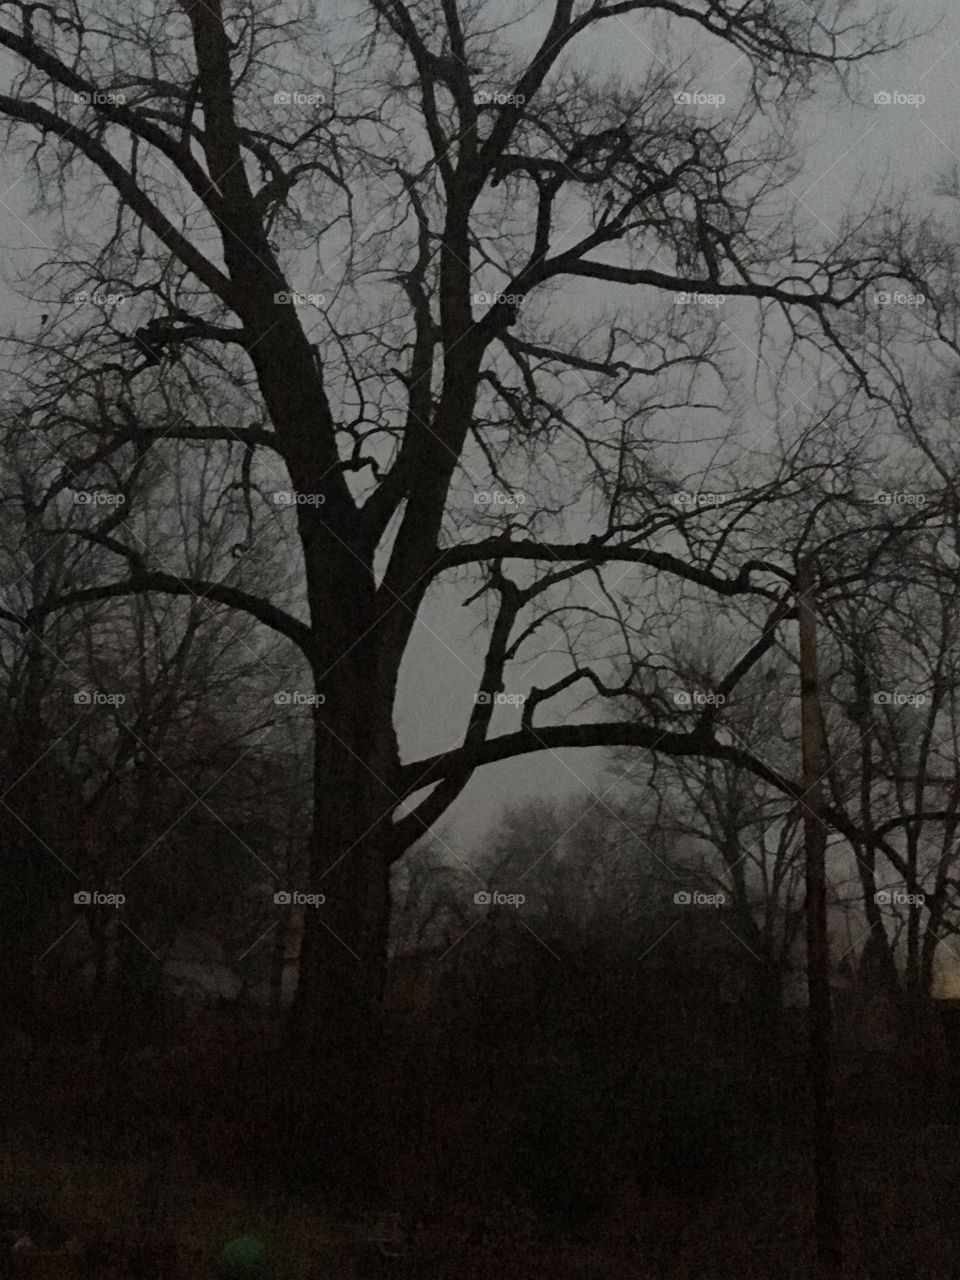 Trees in light fog